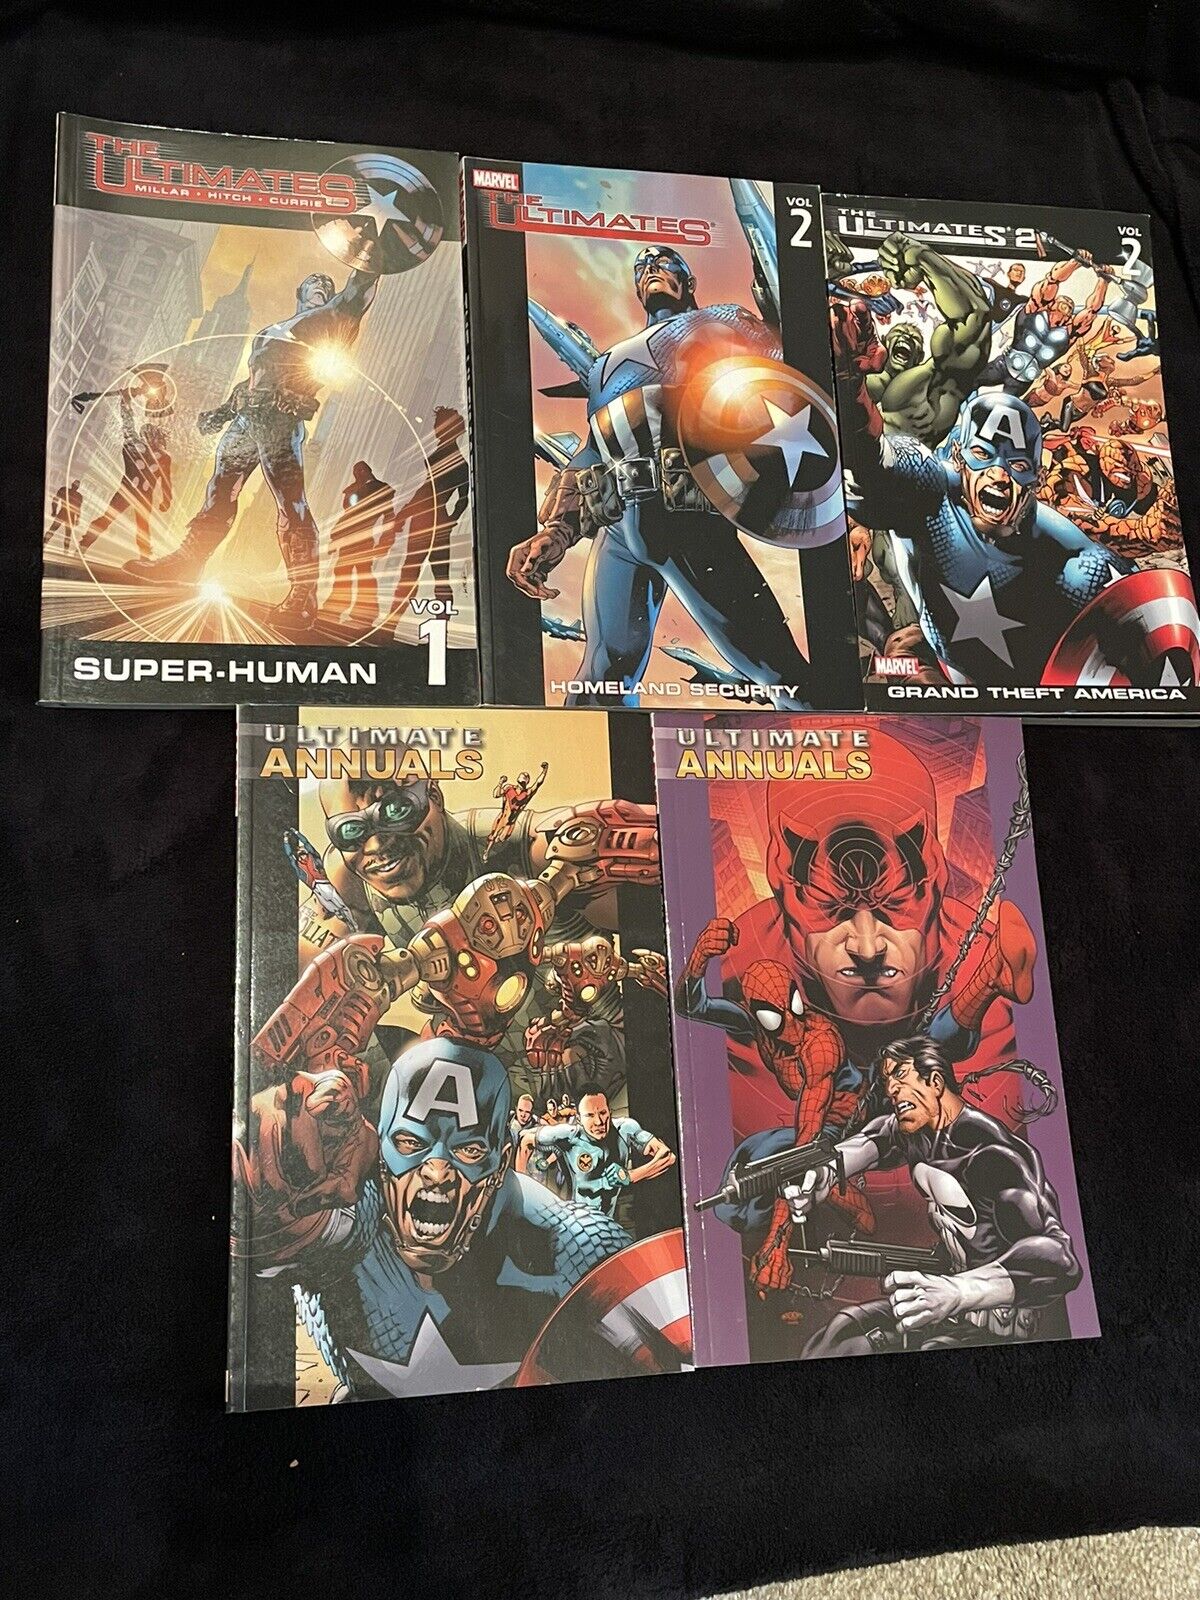 Marvel Comics The Ultimates TPB Lot Vol 1&2, 2 Annuals, 1 Part 2 Vol 2